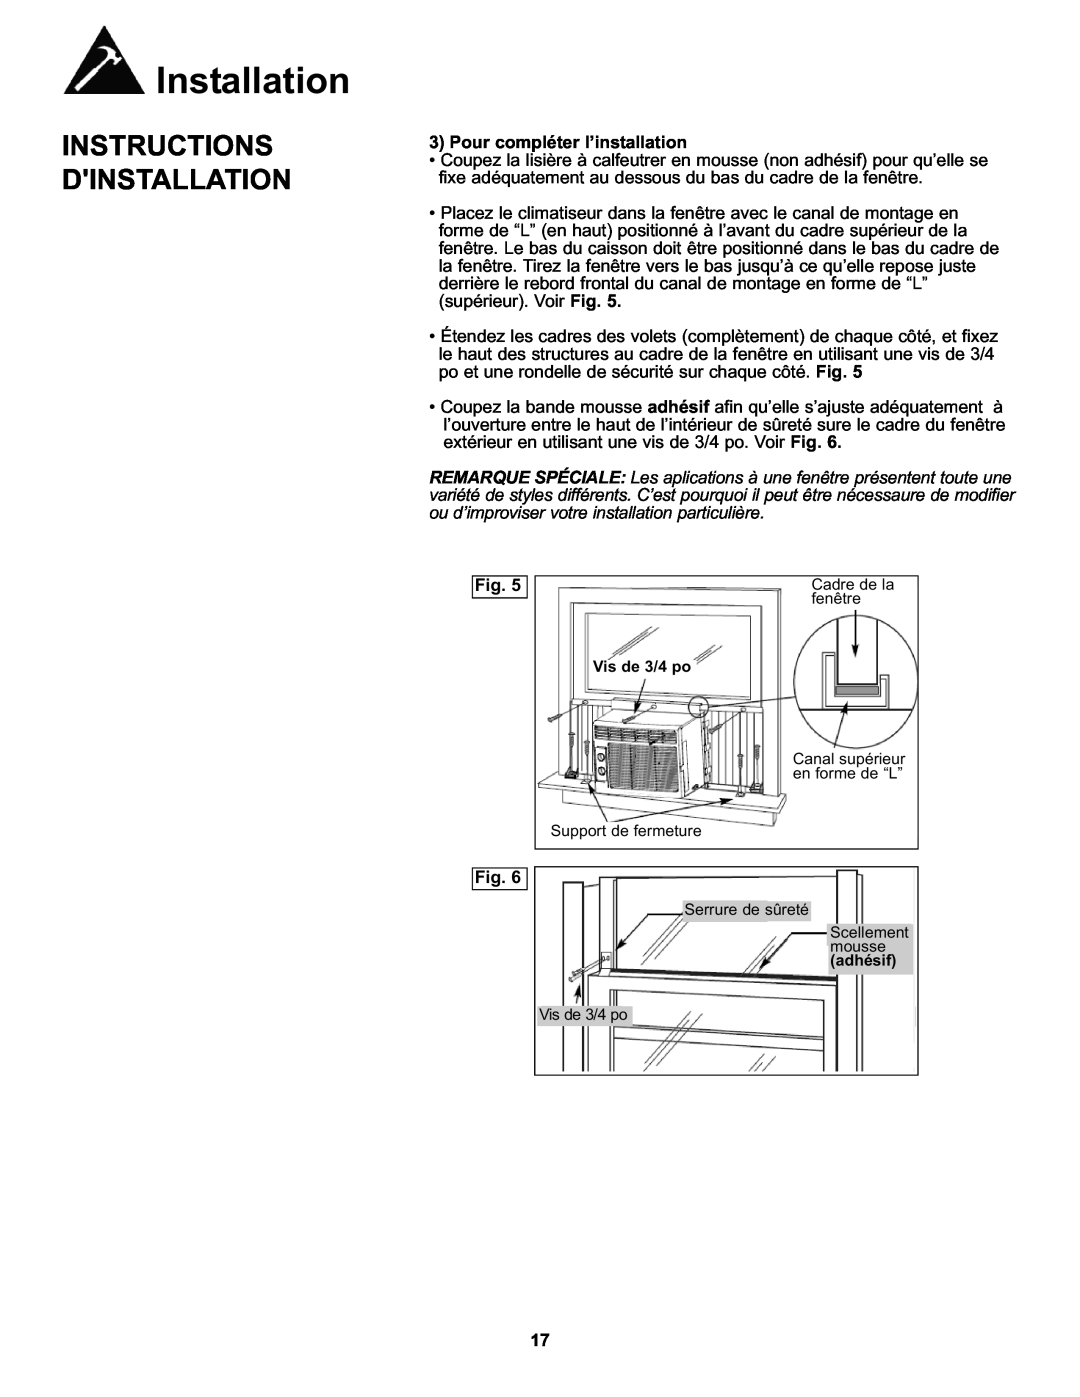 Danby DAC050MB1GB manual Pour compléter l’installation, Installation, Instructions Dinstallation 